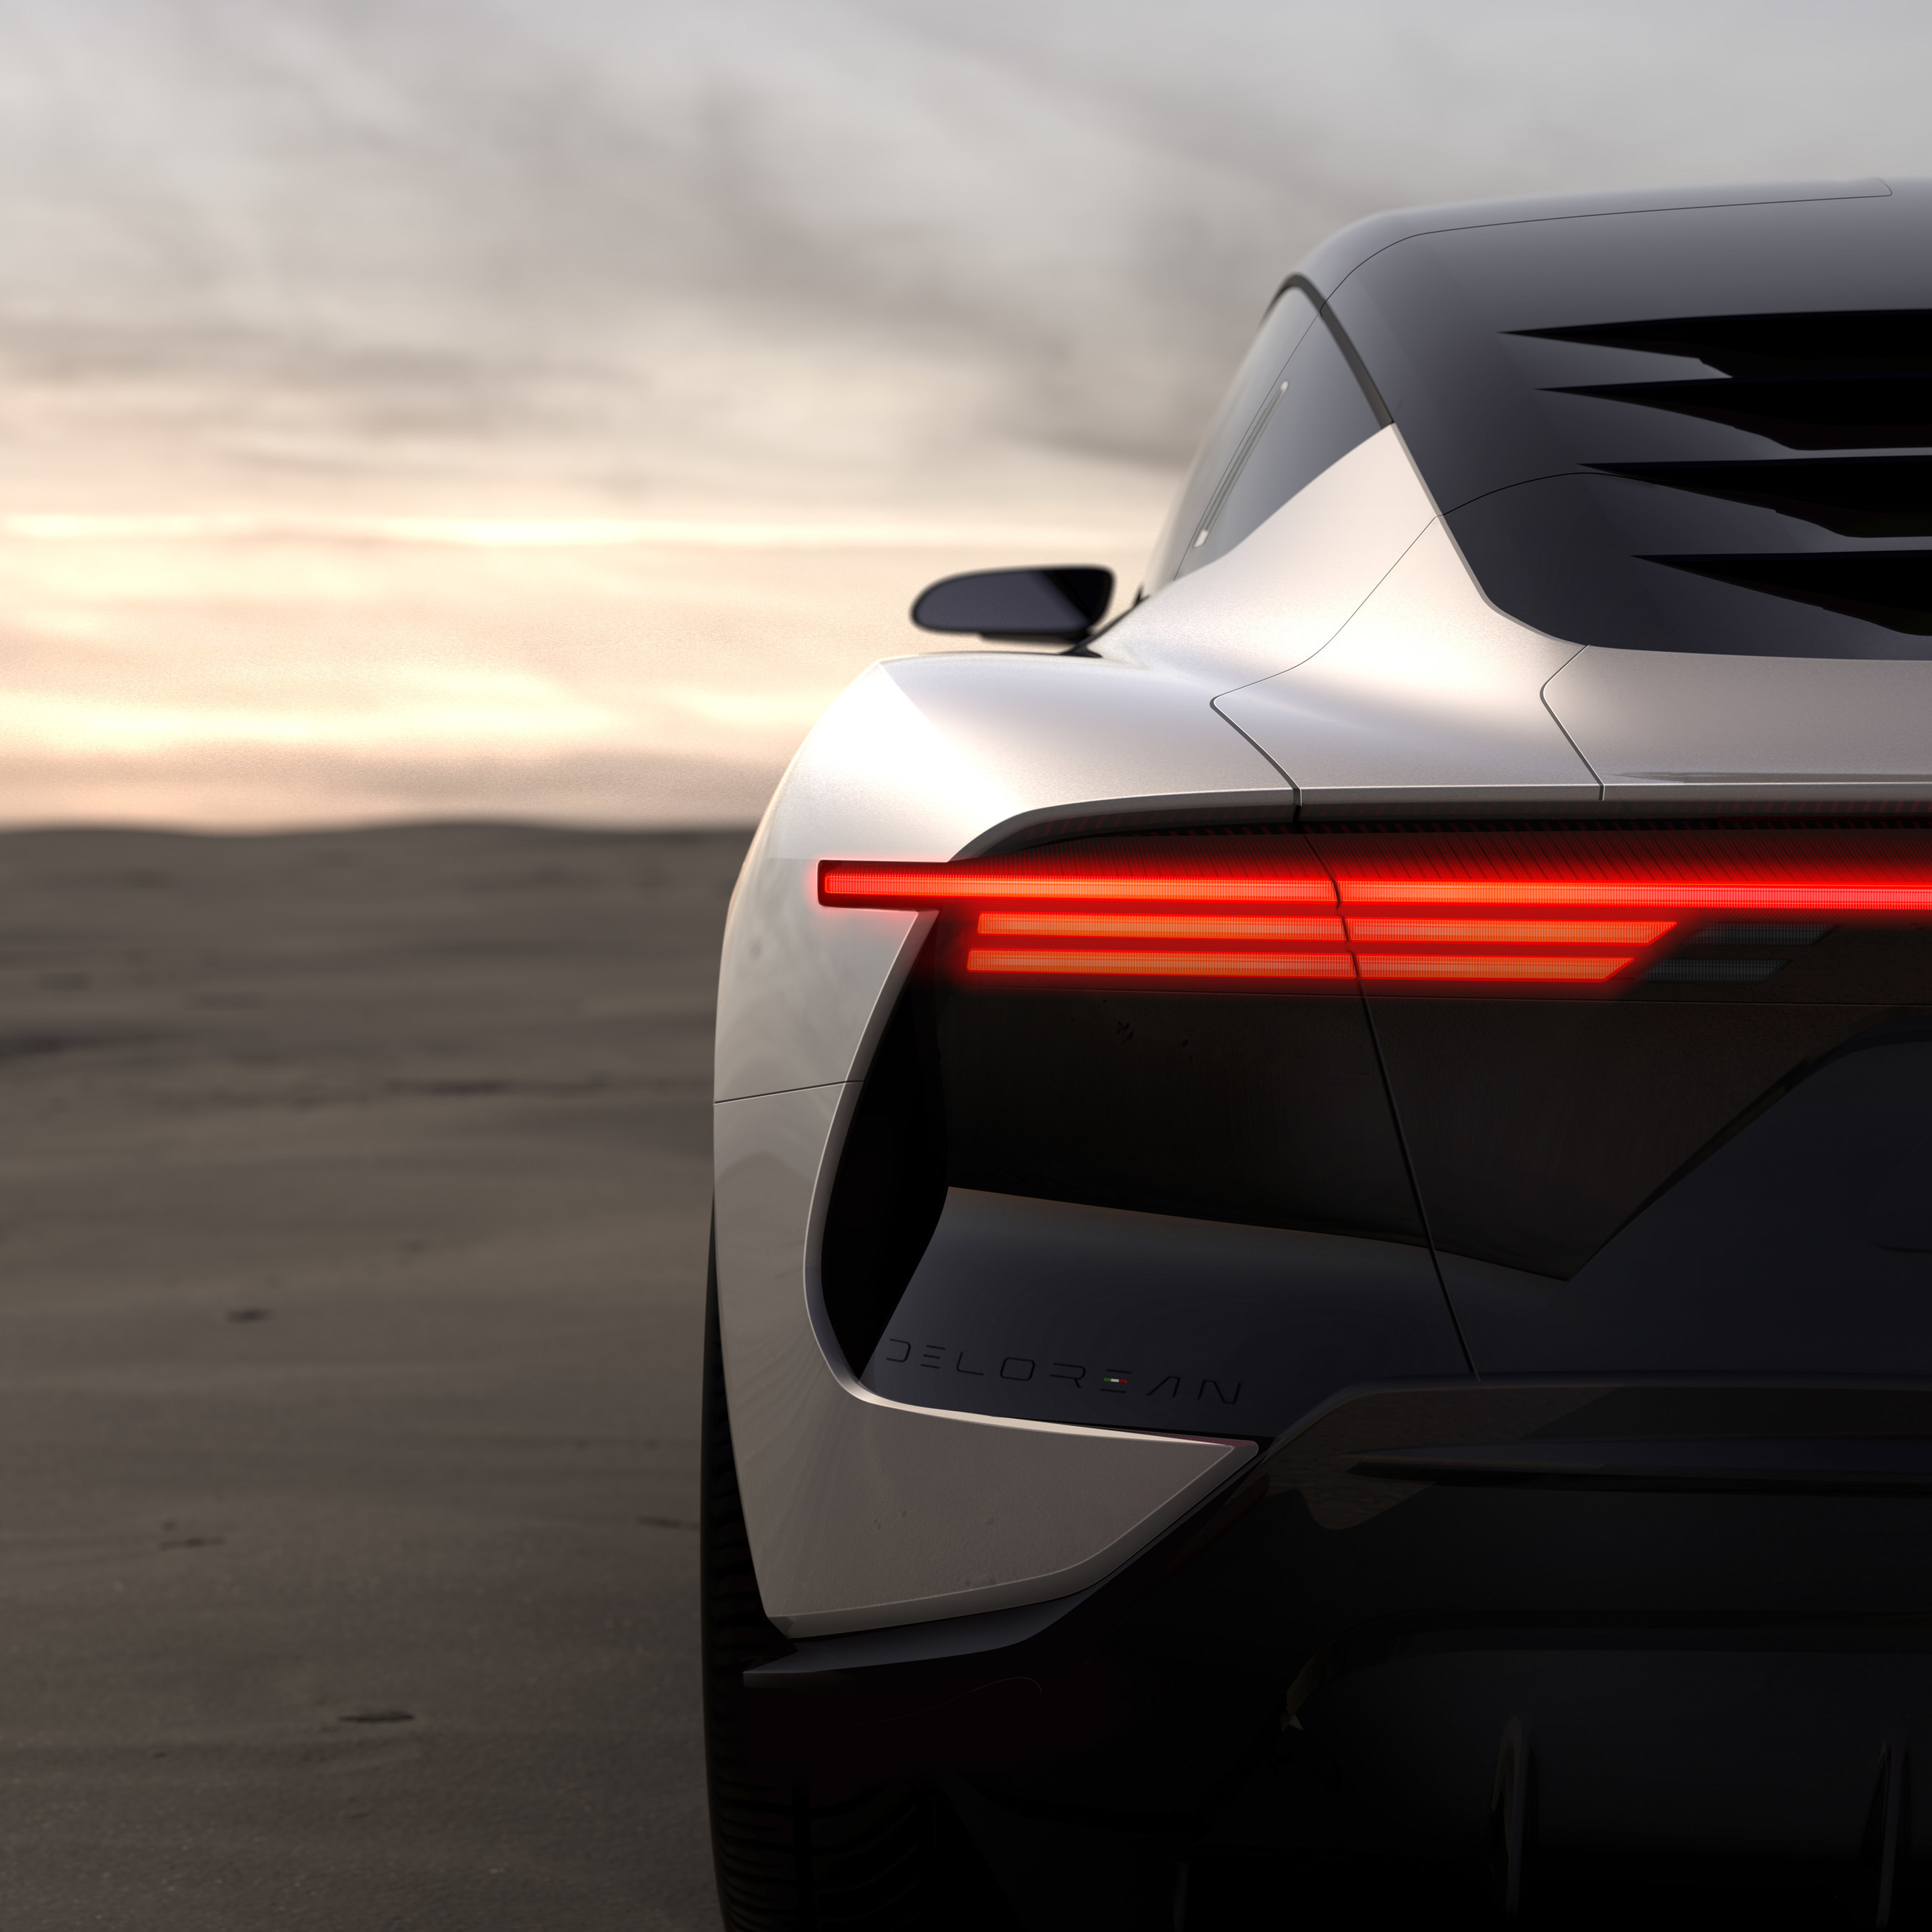 DeLorean teases its EV concept car